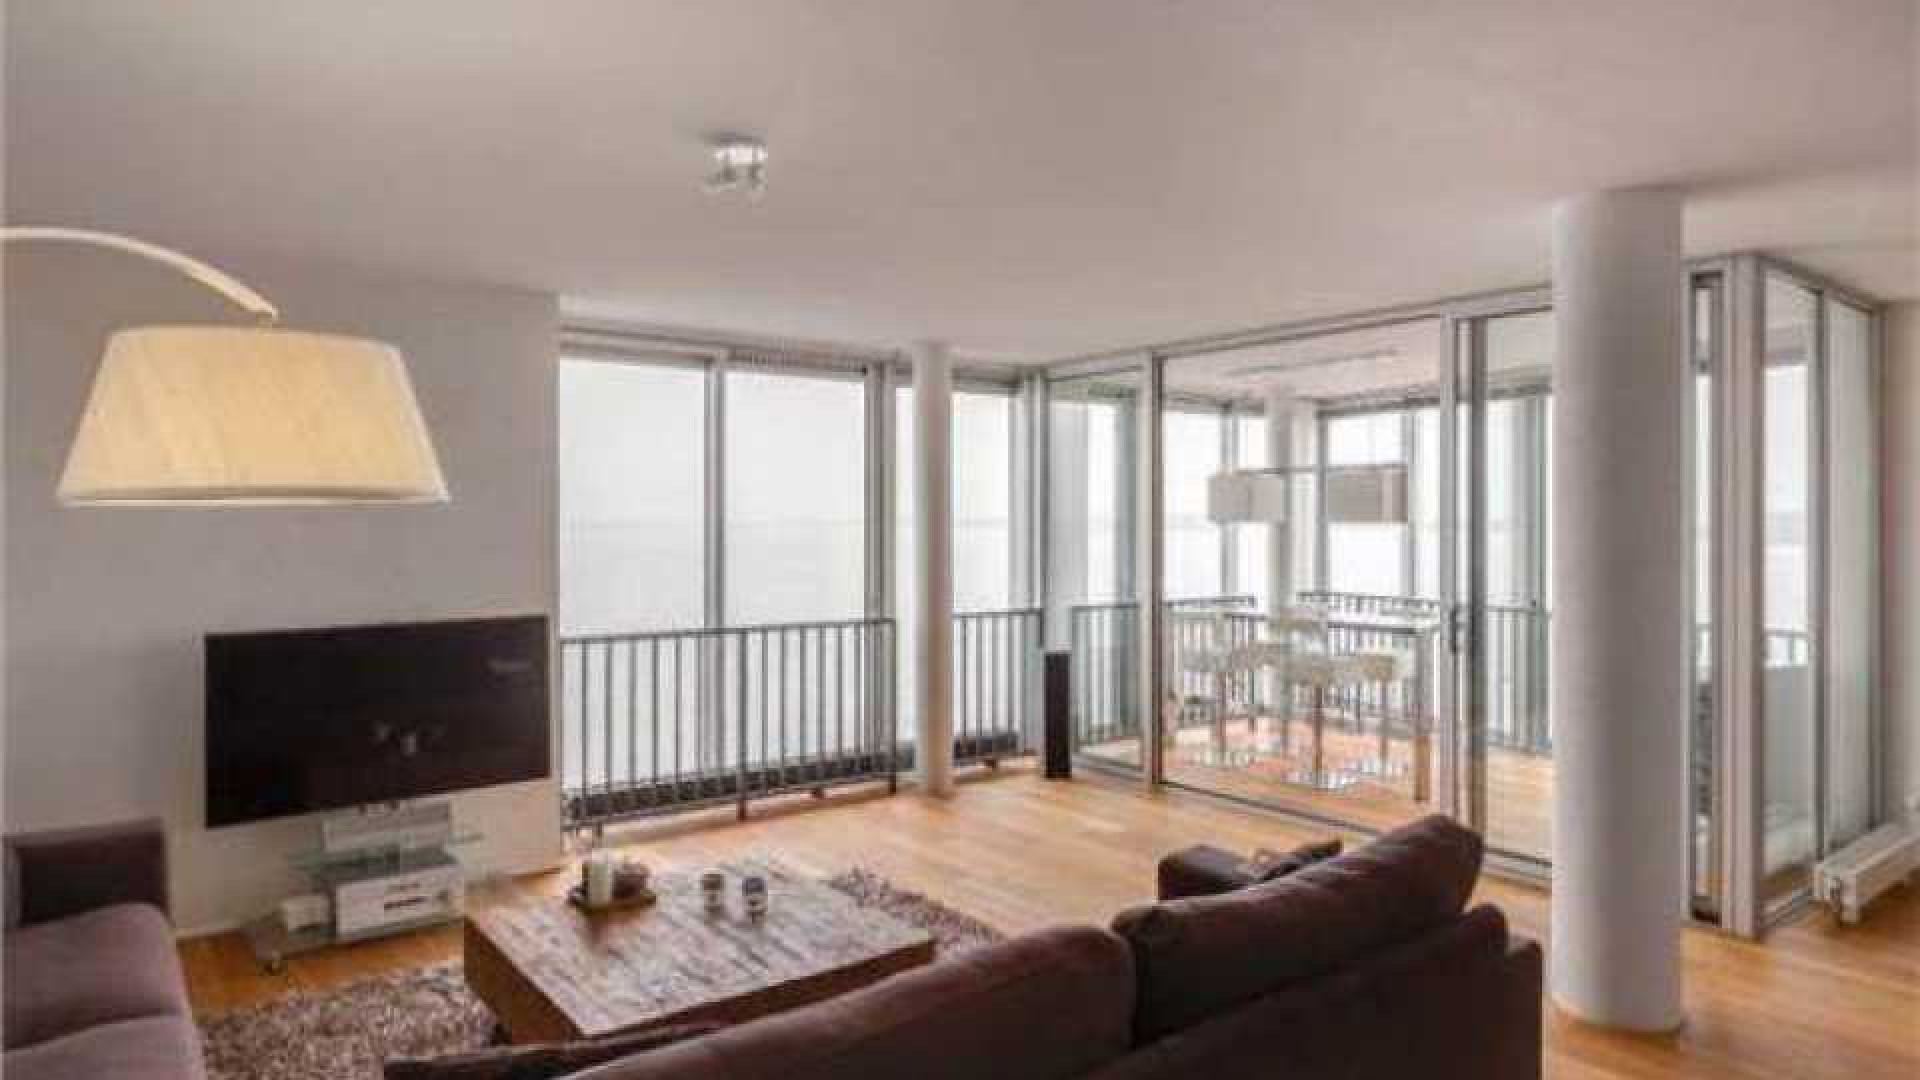 Thomas Berge ruilt riante villa met botenhuis in voor appartement. 1